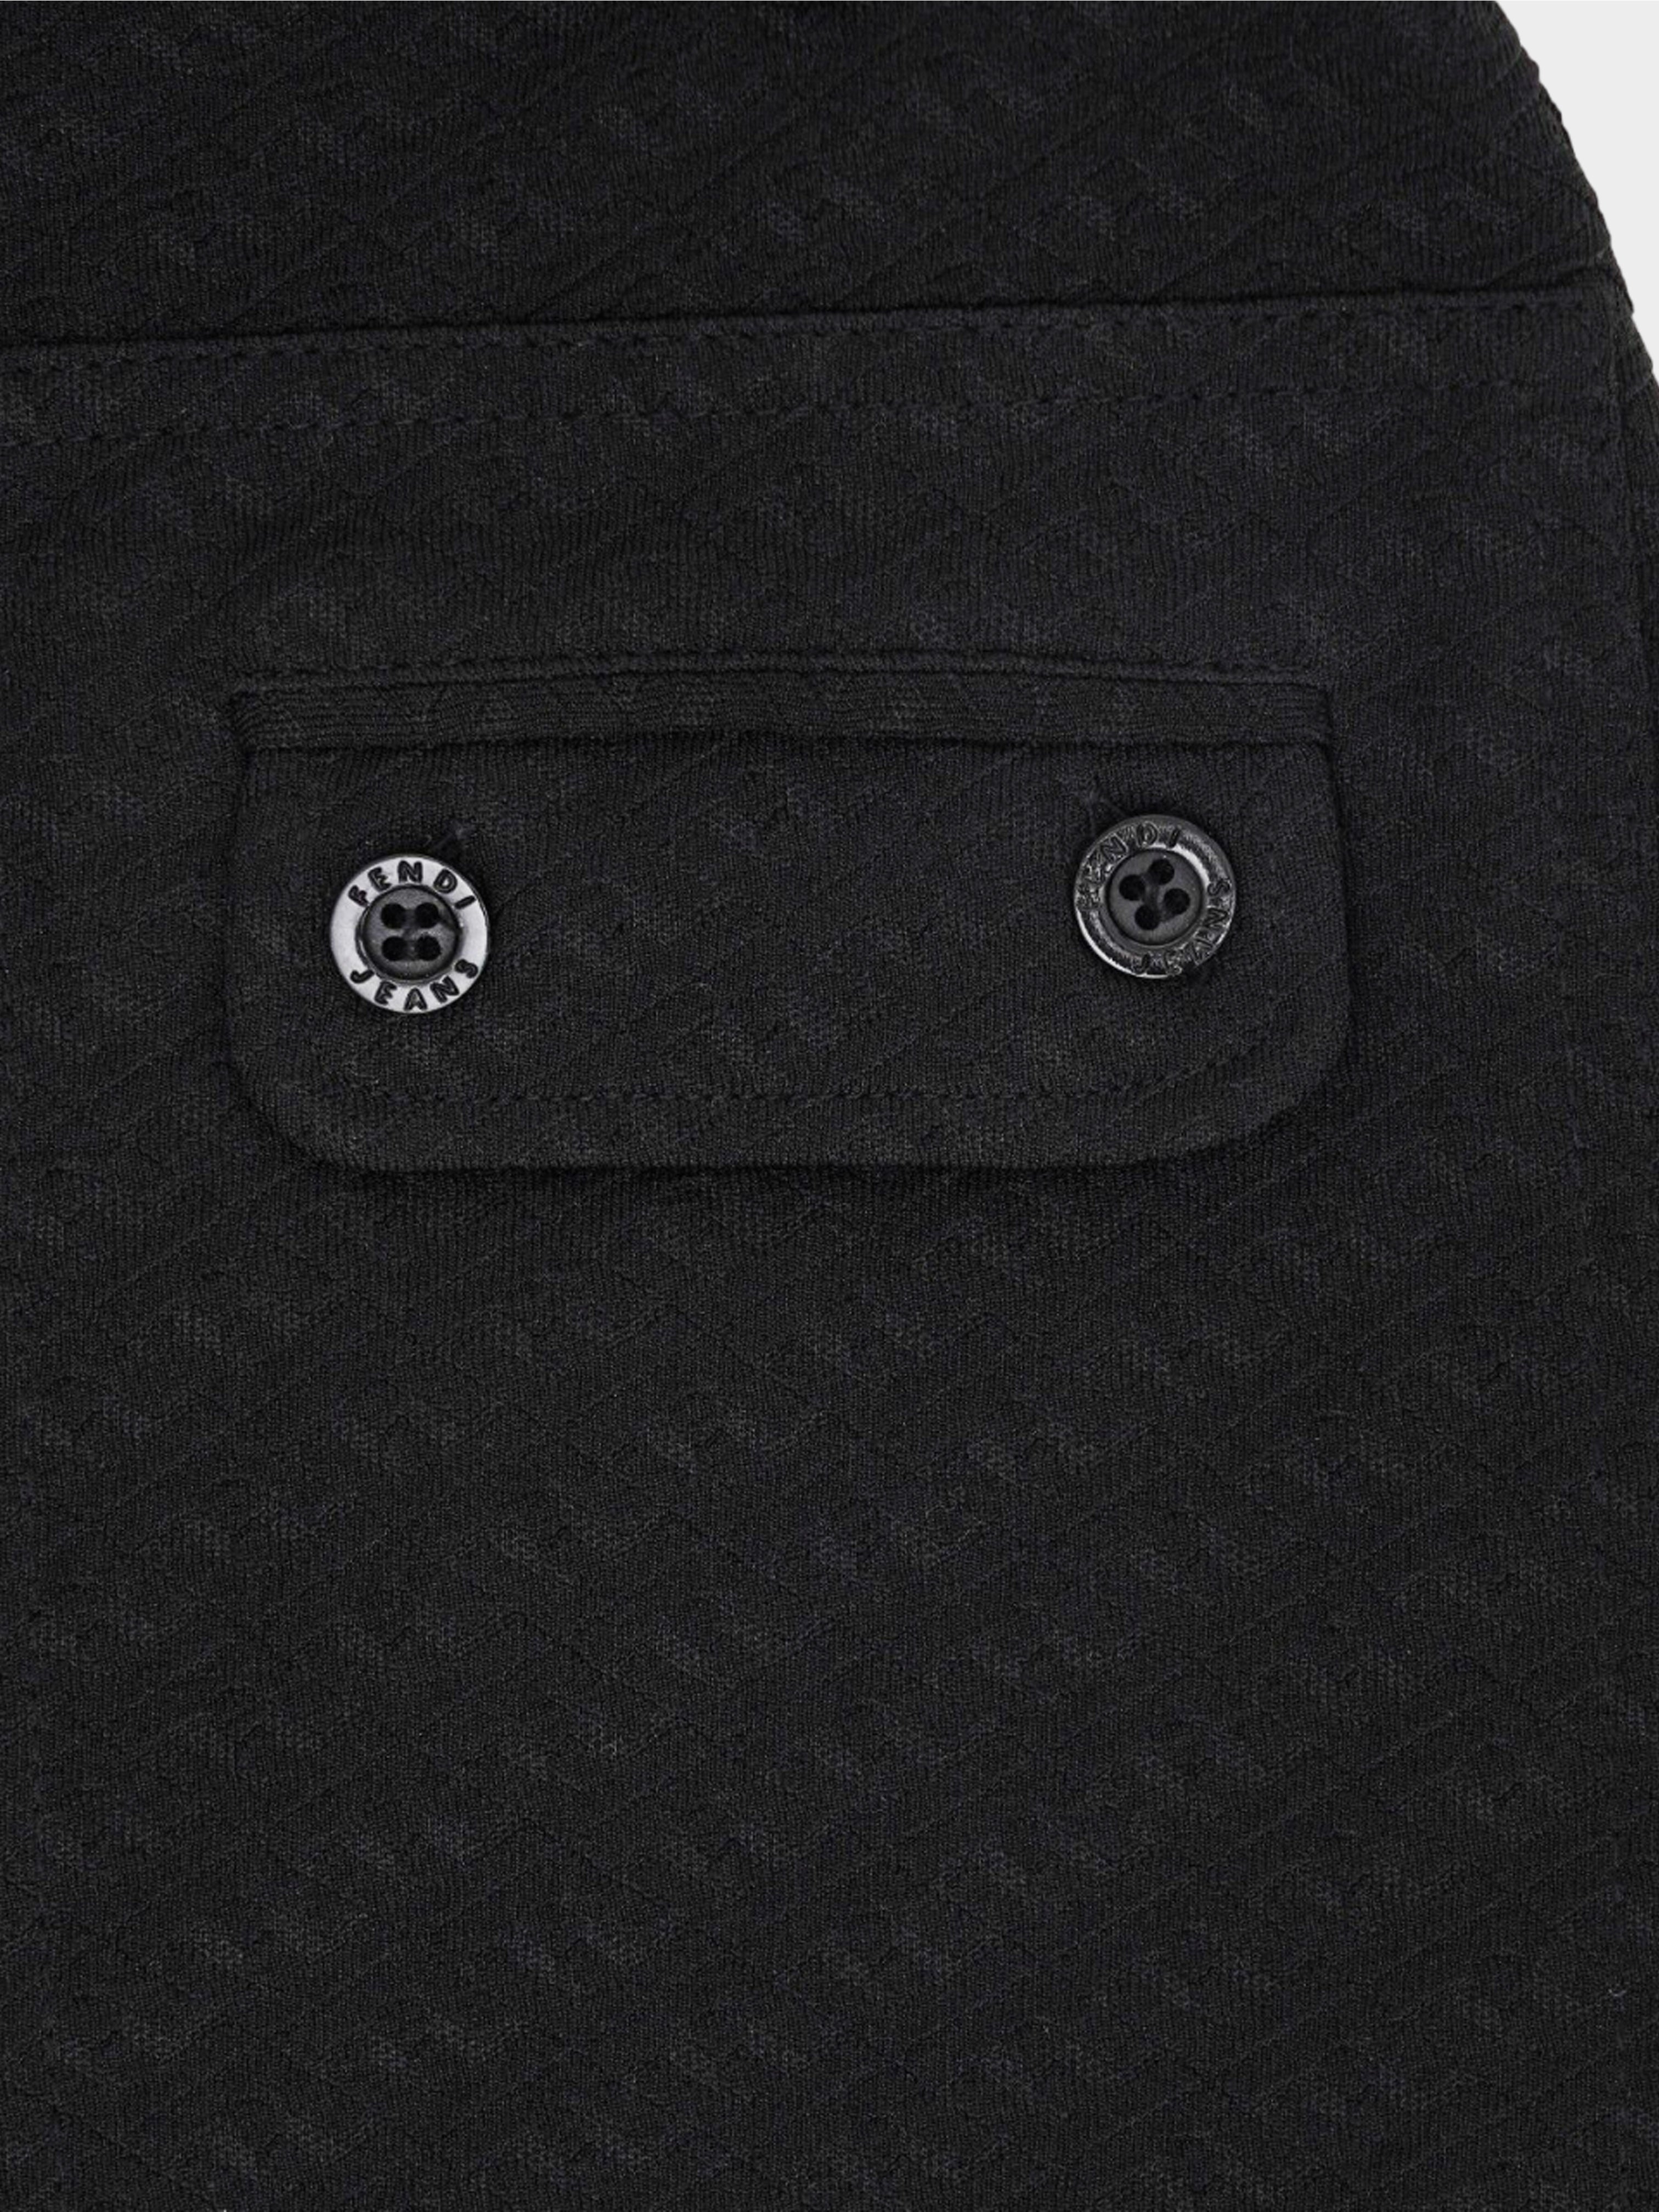 Fendi Jeans 1990s Black Zucca Pattern Maxi Skirt